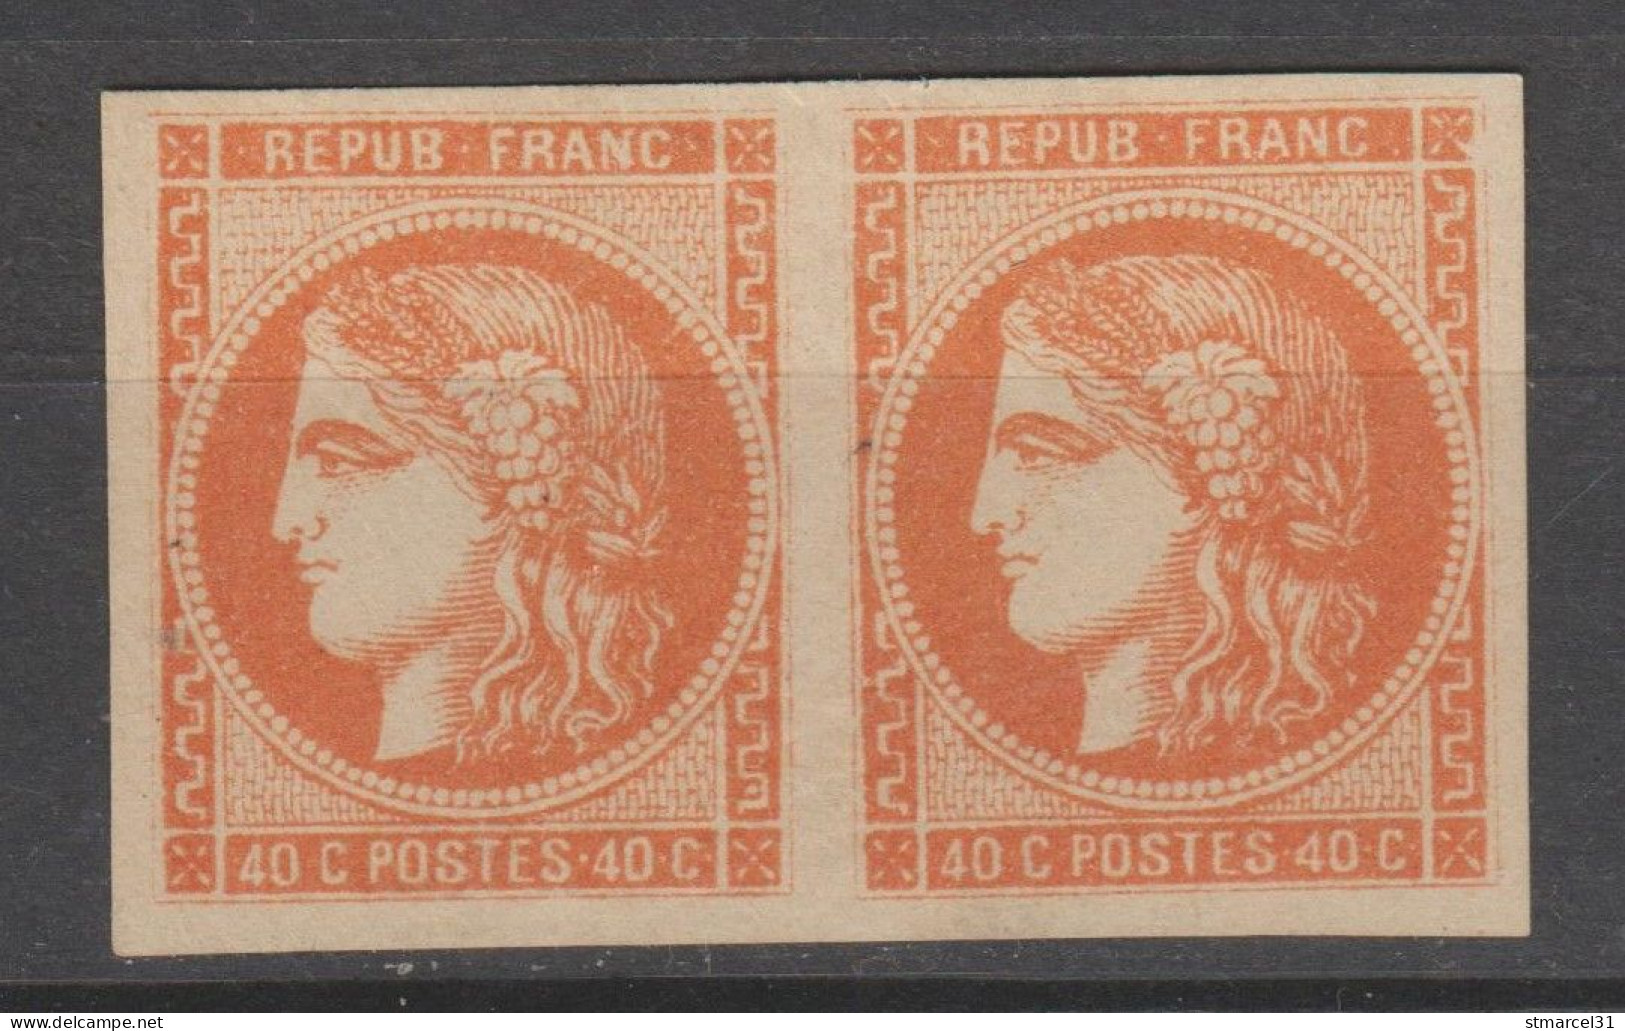 JAMAIS PROPOSE N°48l "4 "PSEUDO RETOUCHE Tenant à NORMAL" LUXE Neuf(*) Cote>2500€ - 1870 Ausgabe Bordeaux